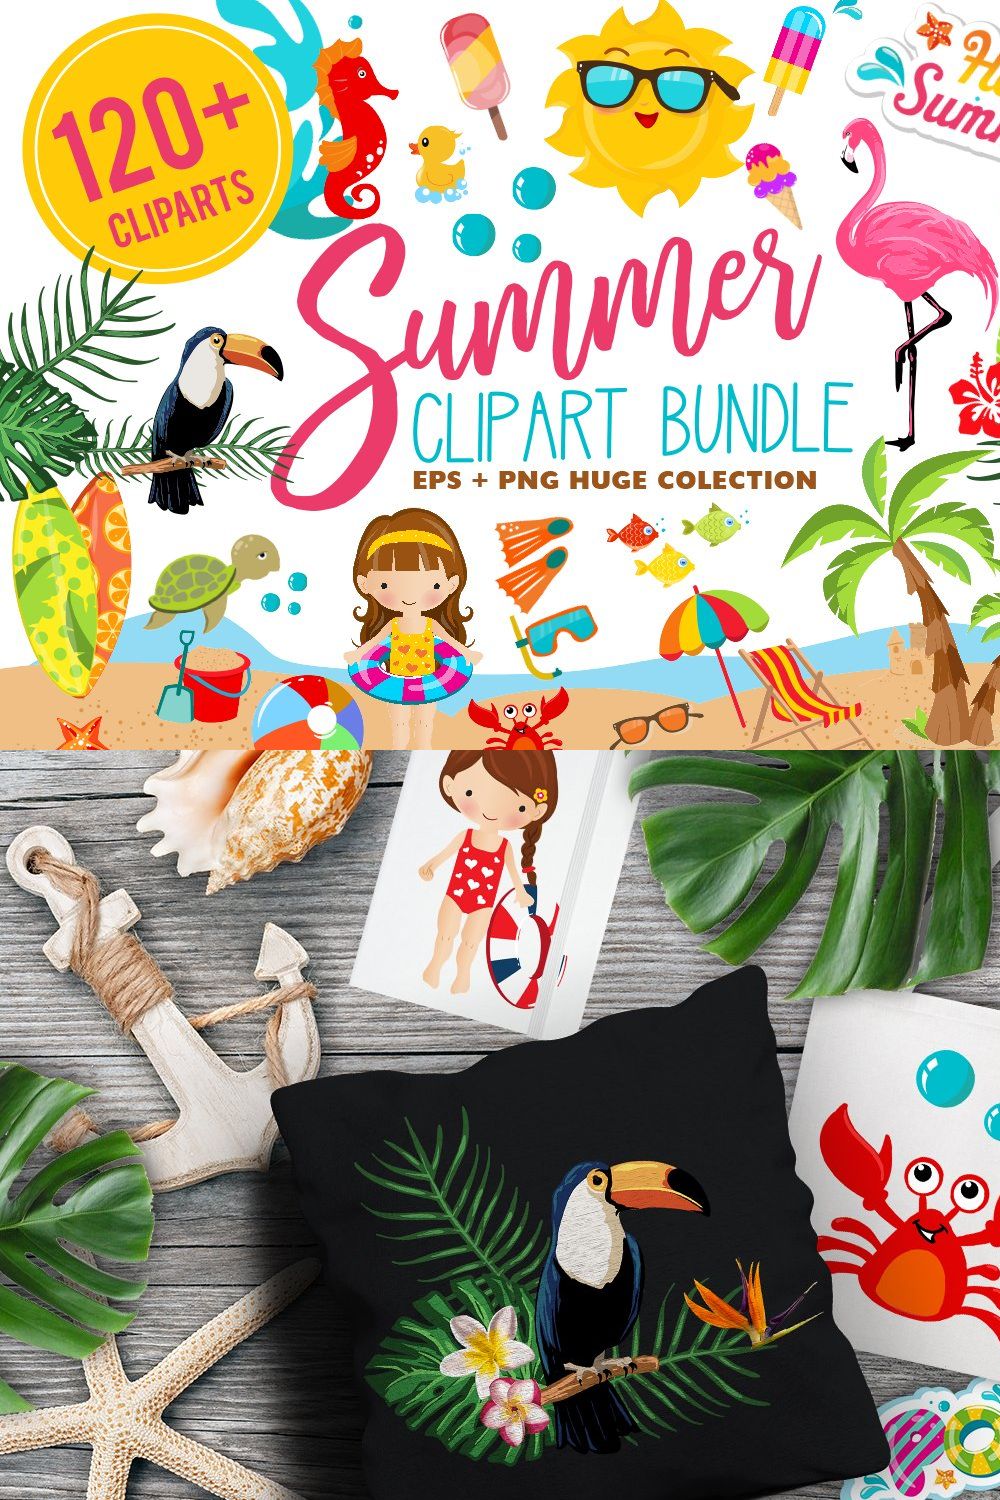 Summer Clipart Bundle - 126 cliparts pinterest preview image.